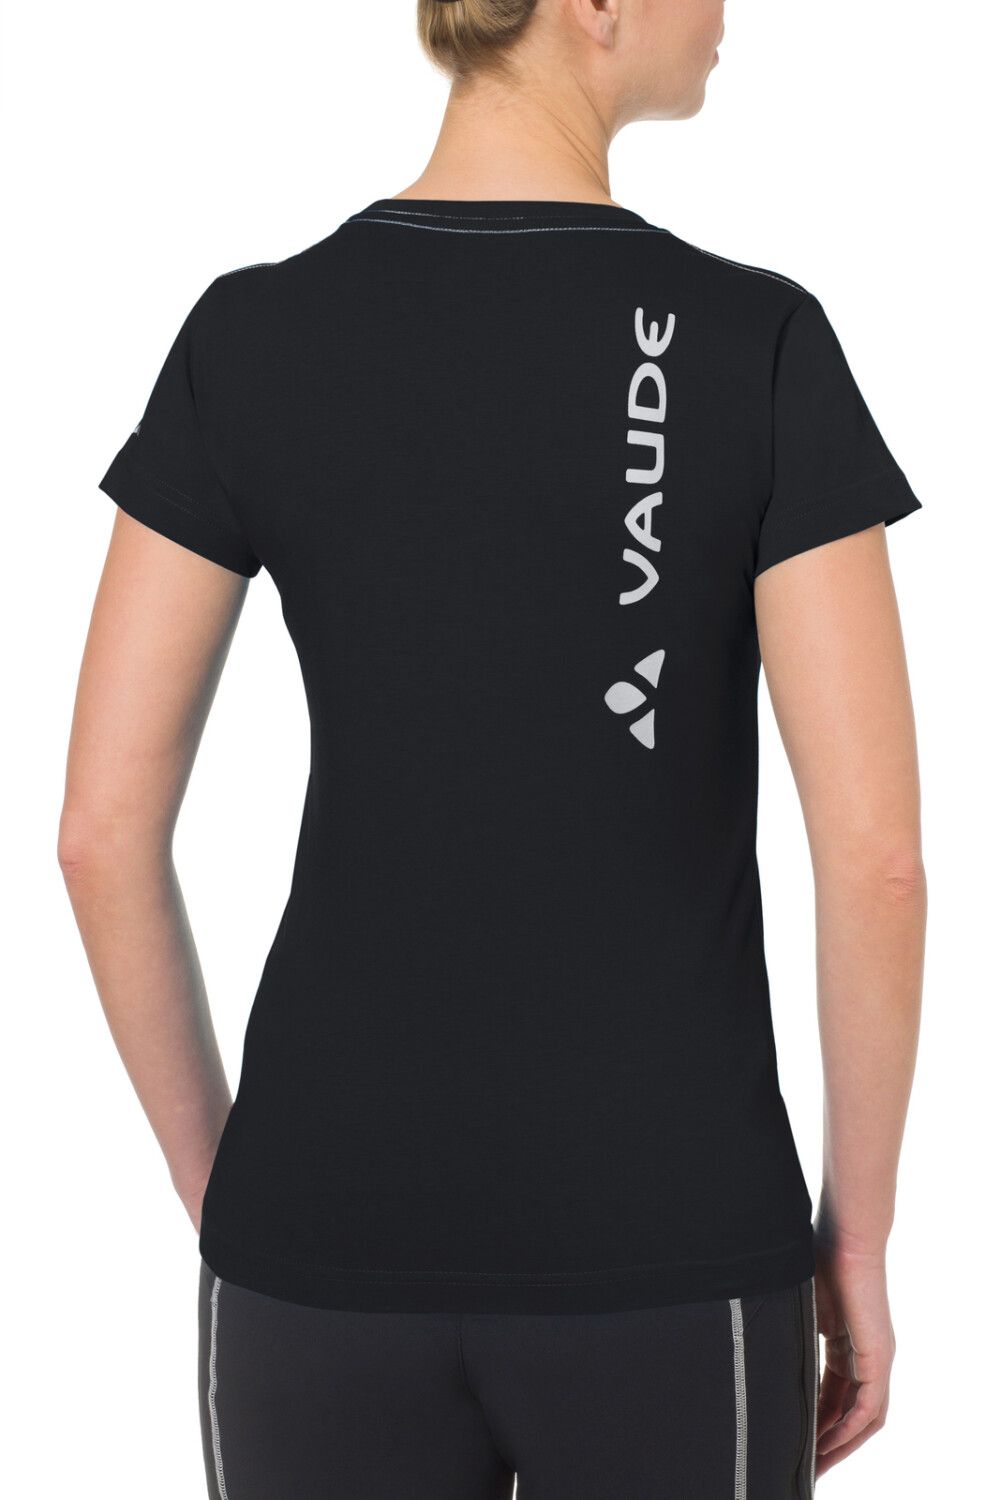 VAUDE Women's Brand Shirt (Bild 2)